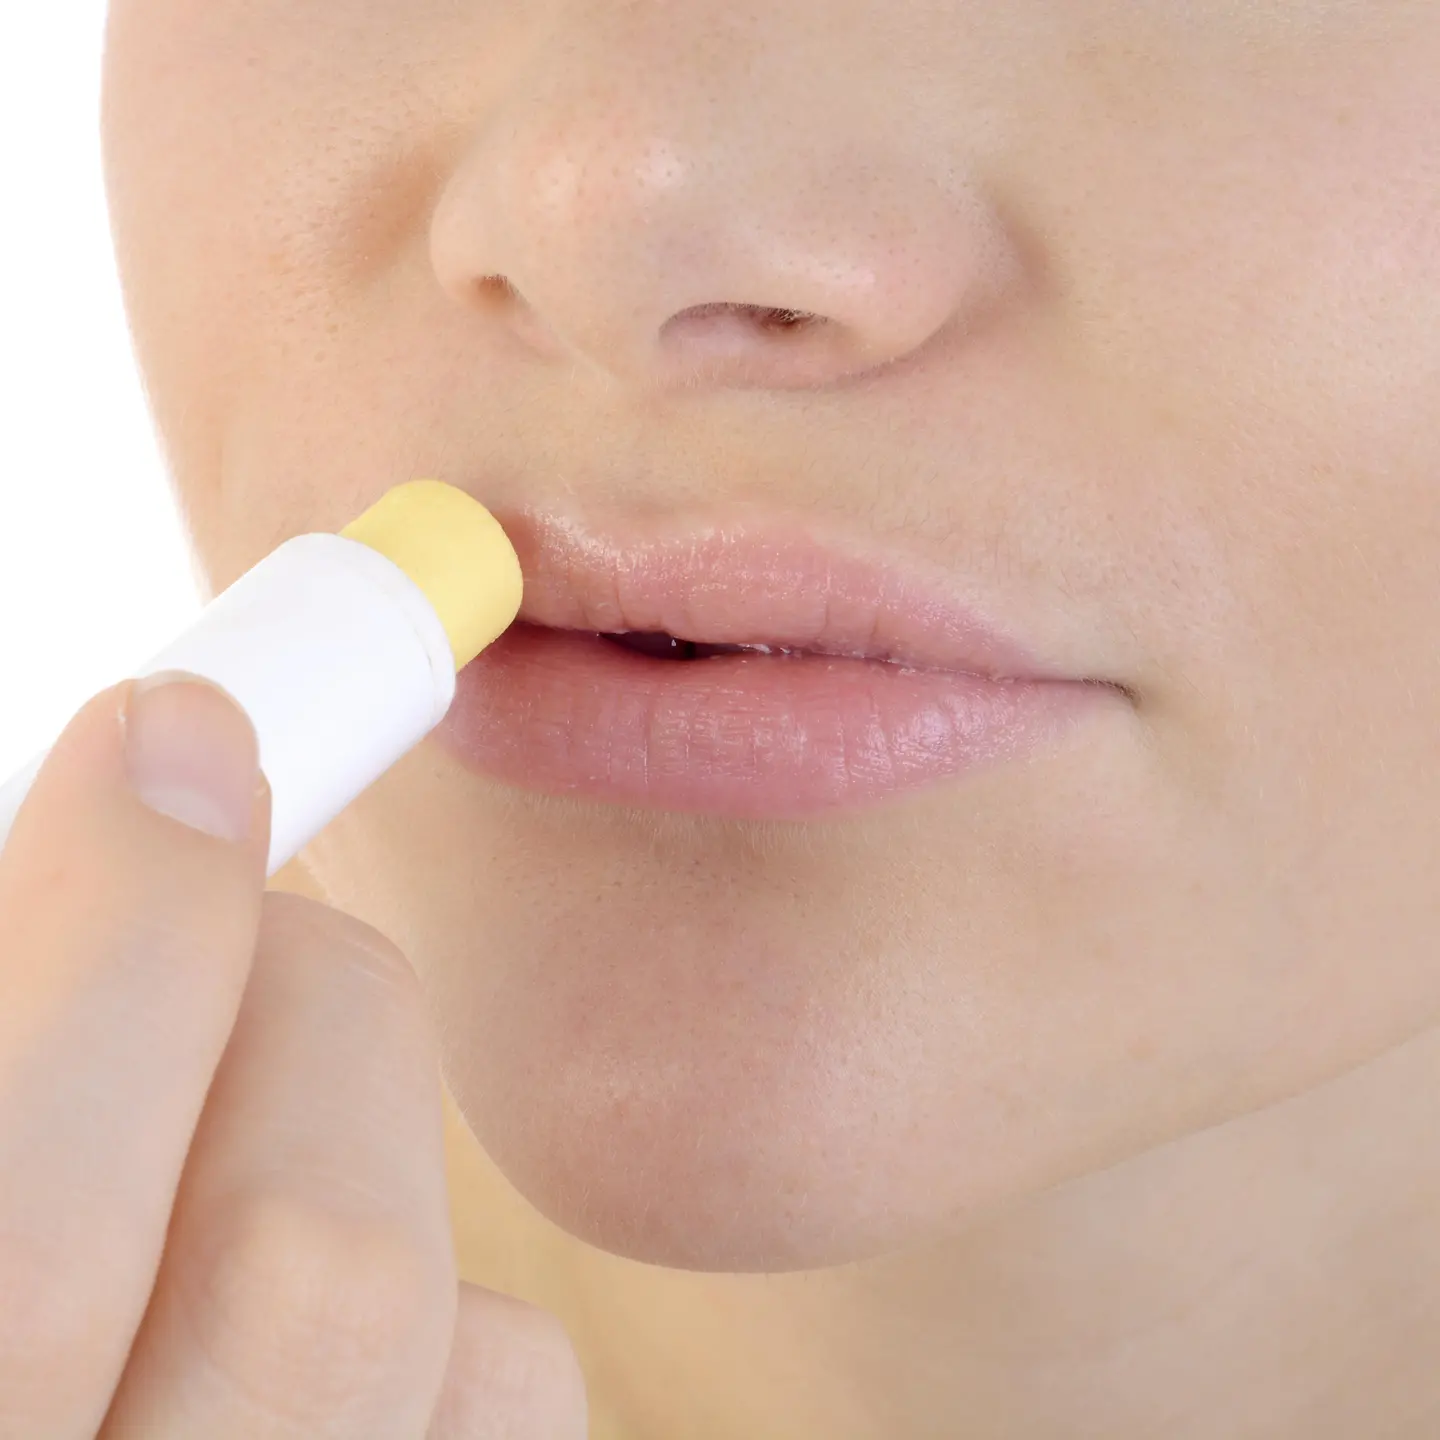 Das Bild zeigt das Gesicht einer Frau, die einen Lippenpflegestift nutzt.